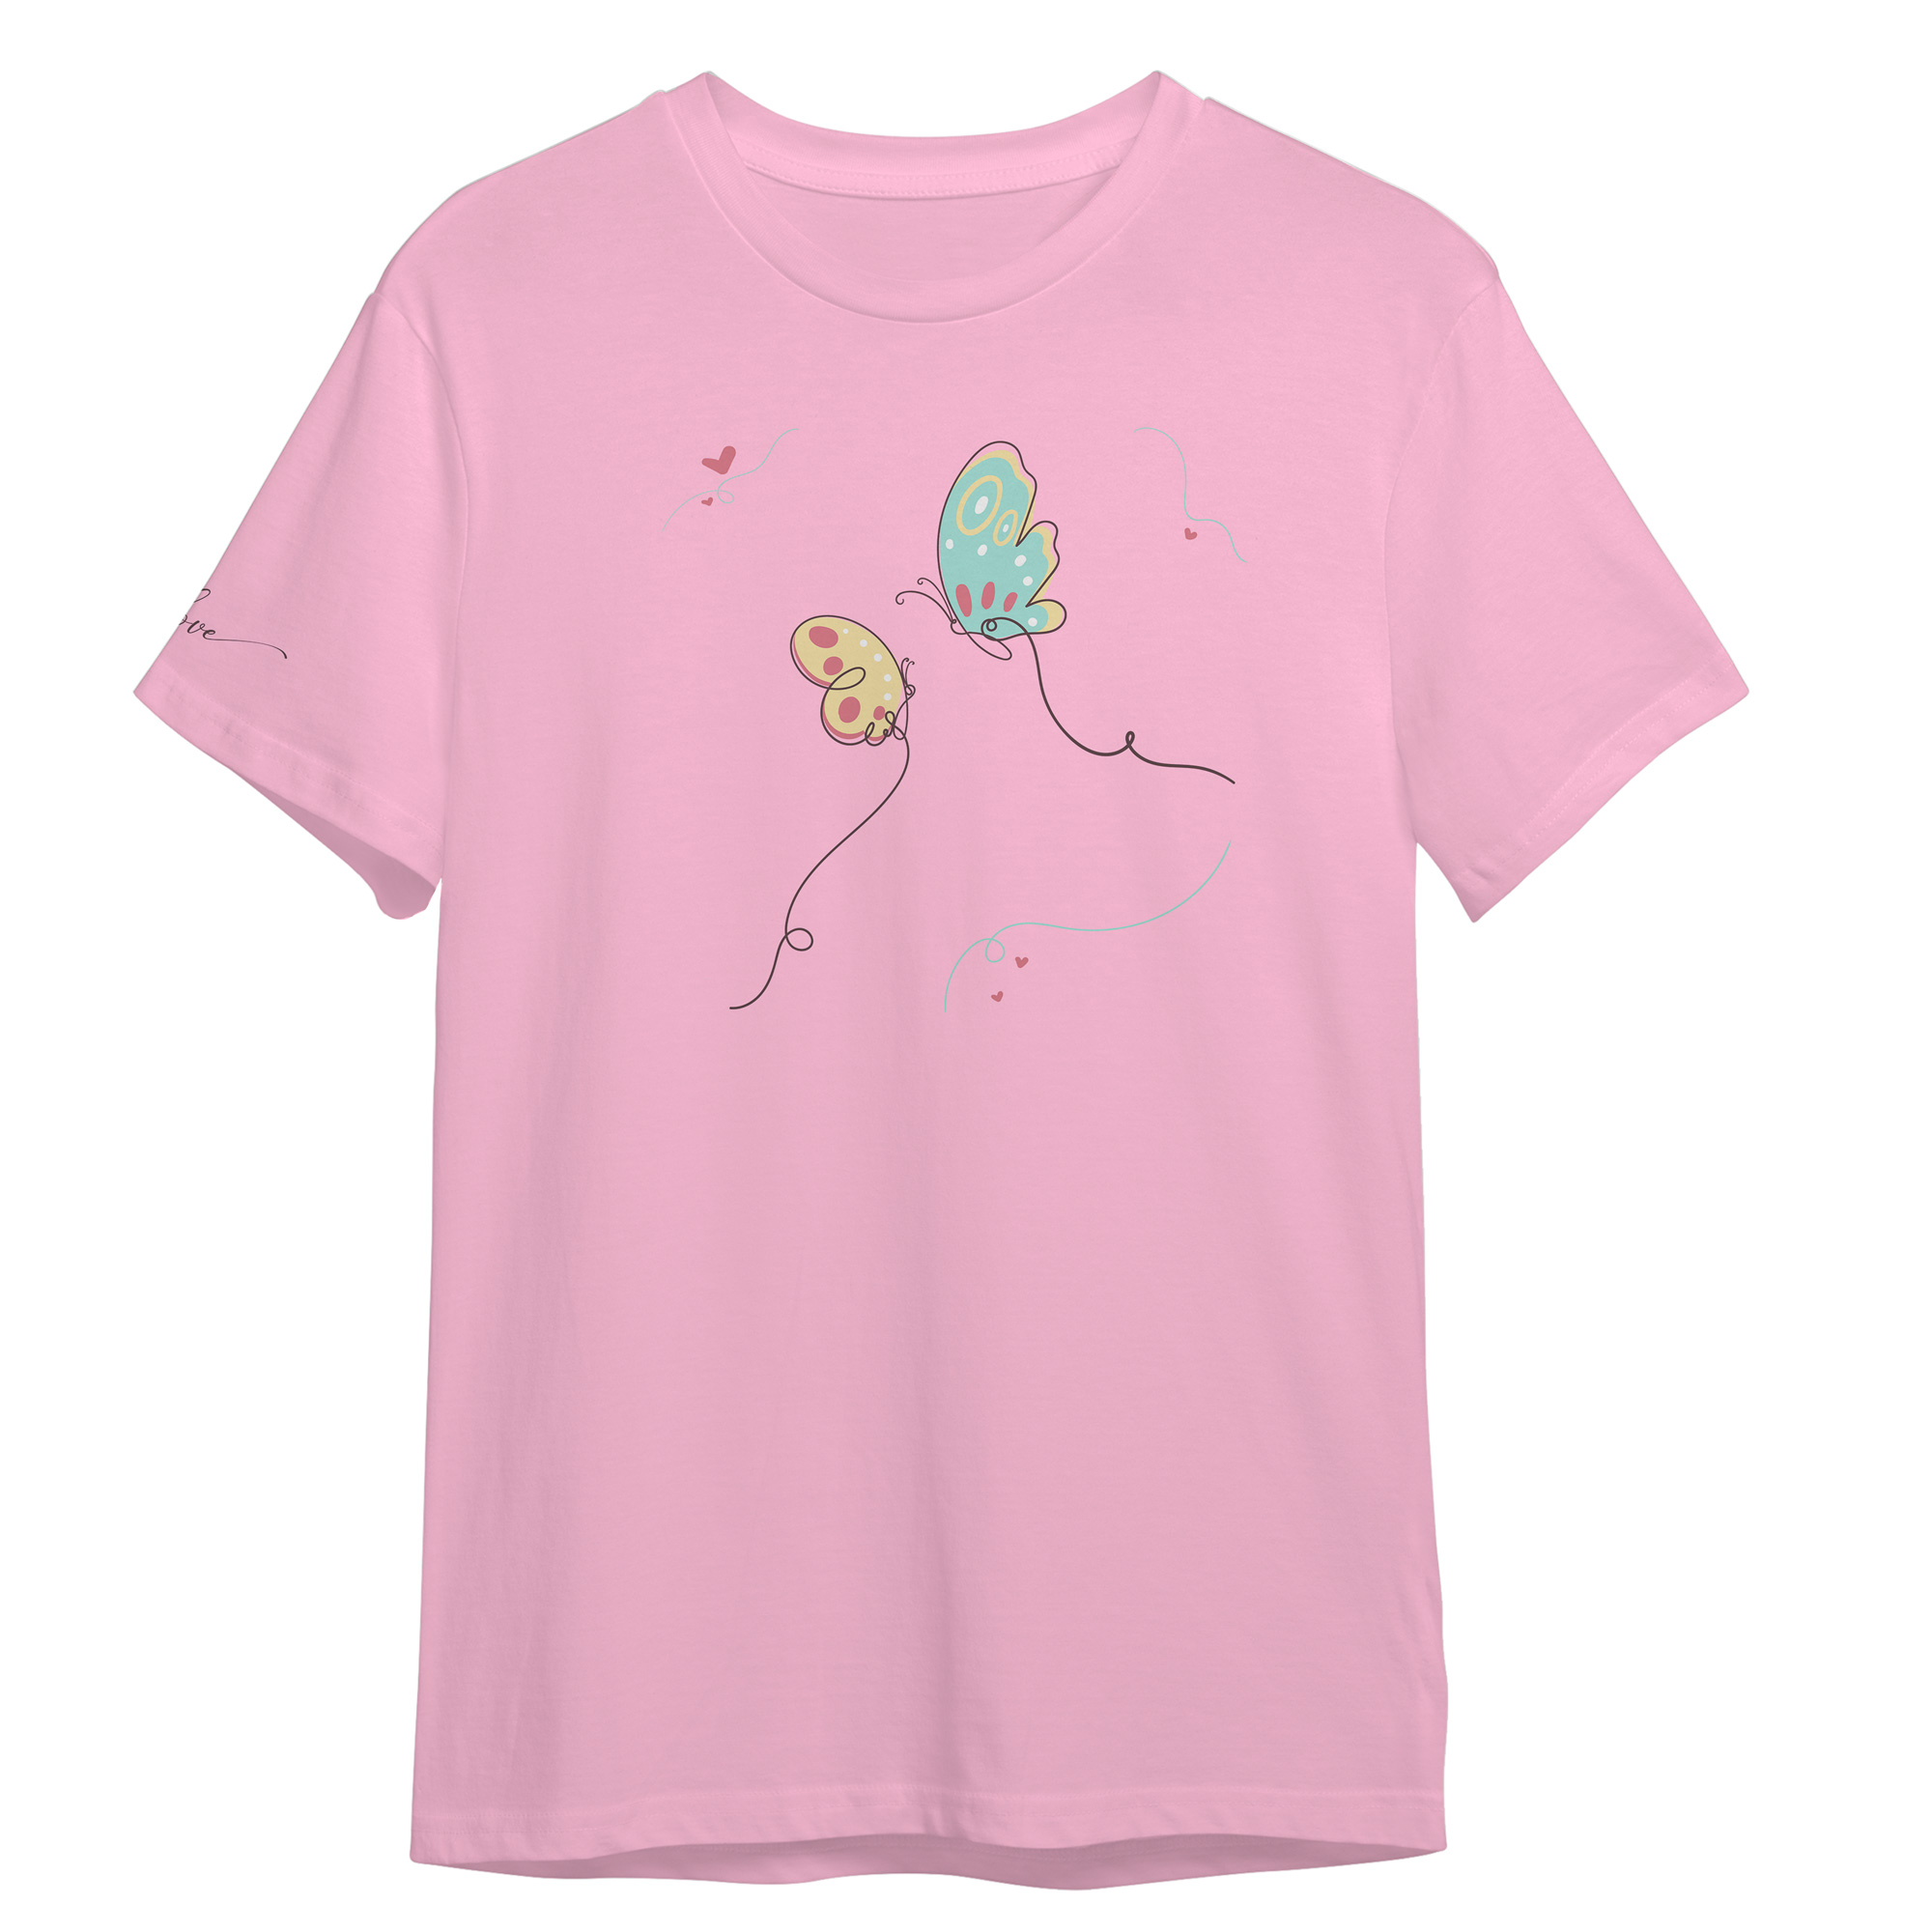 تی شرت آستین کوتاه زنانه مدل پروانه عشق کد 0486 رنگ صورتی